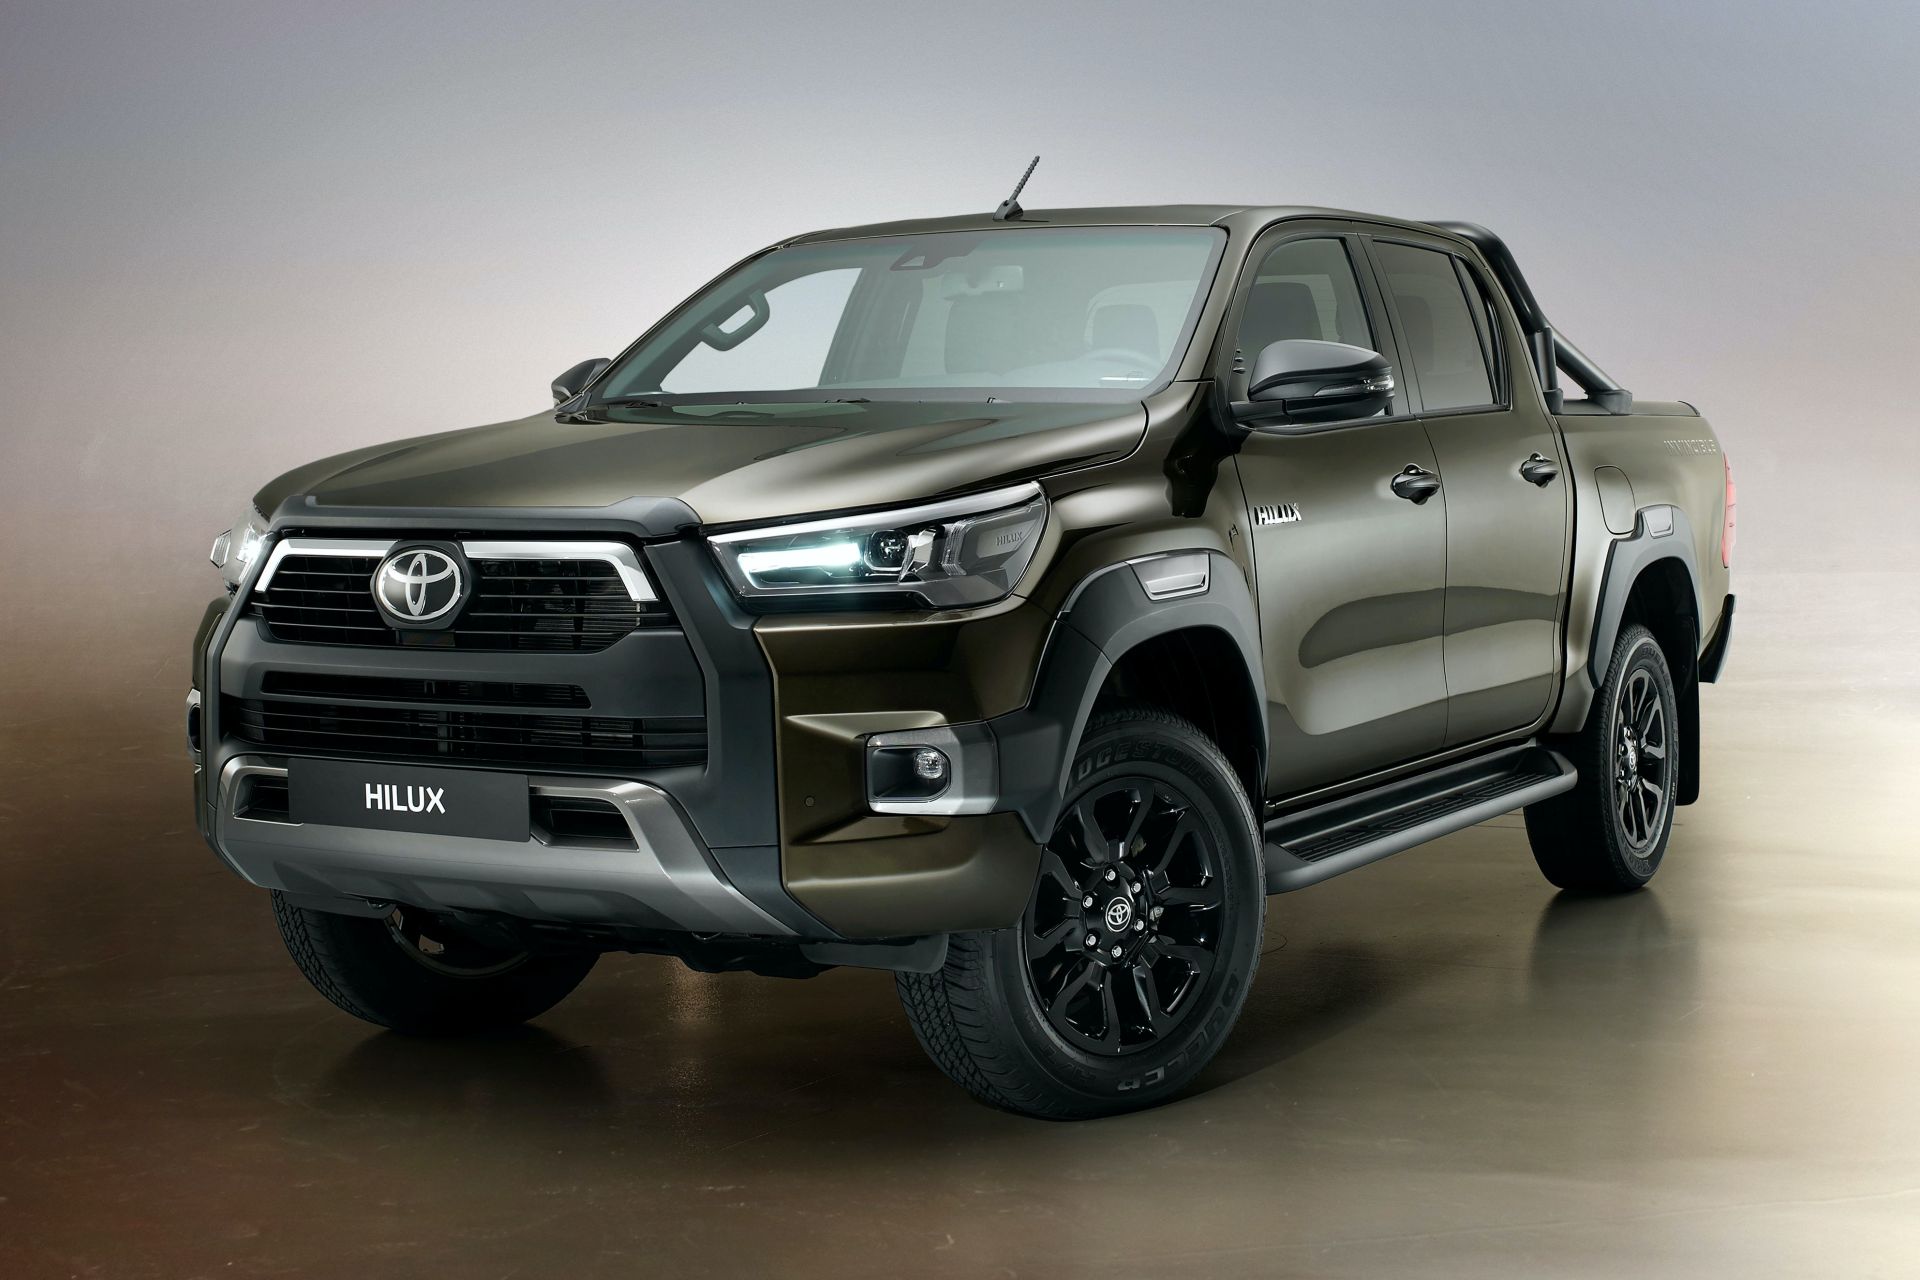 سعر تويوتا هايلكس 2021 في السعودية Toyota Hilux 2